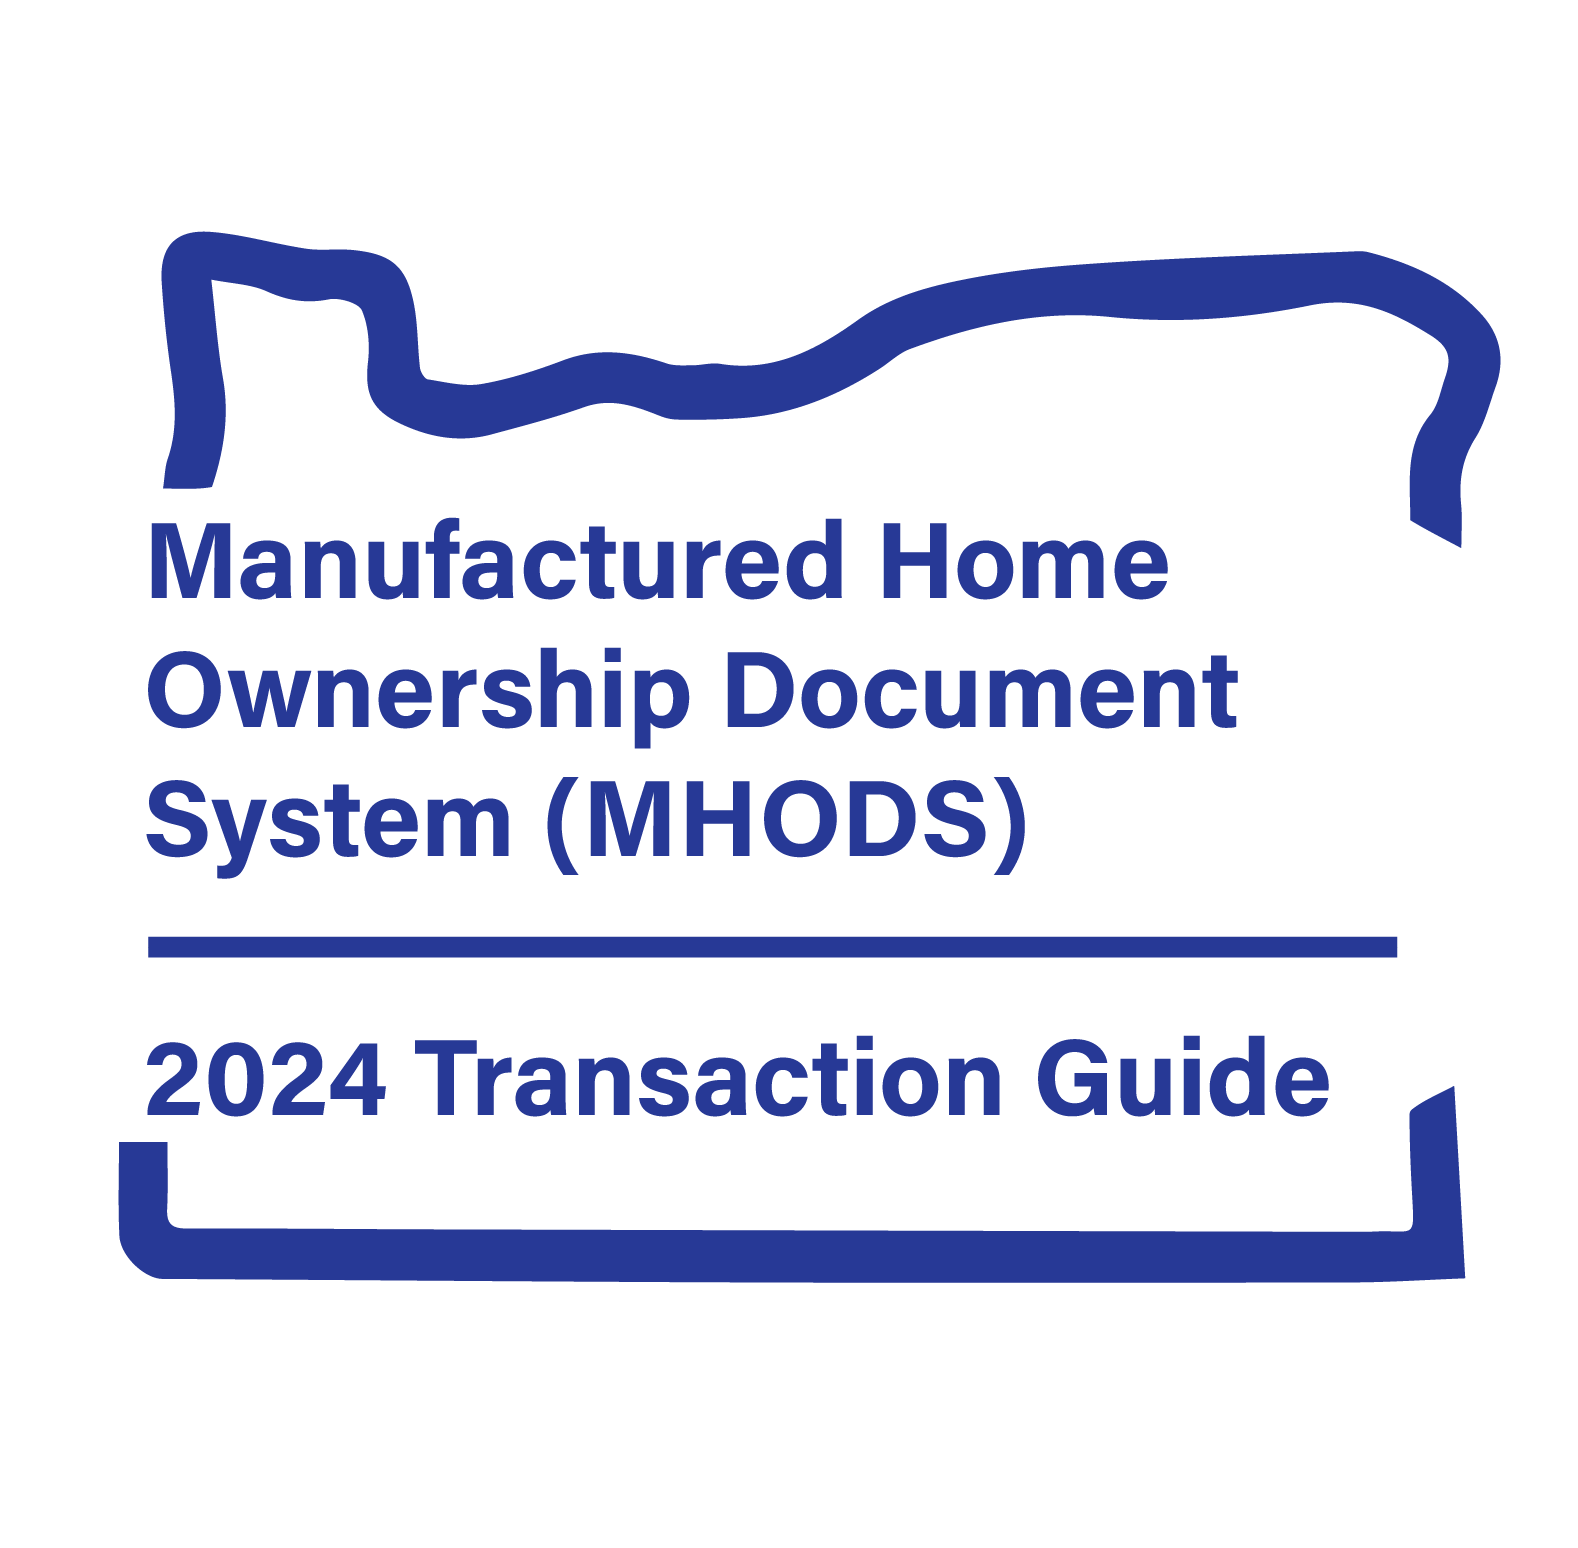 MHODS transaction guide